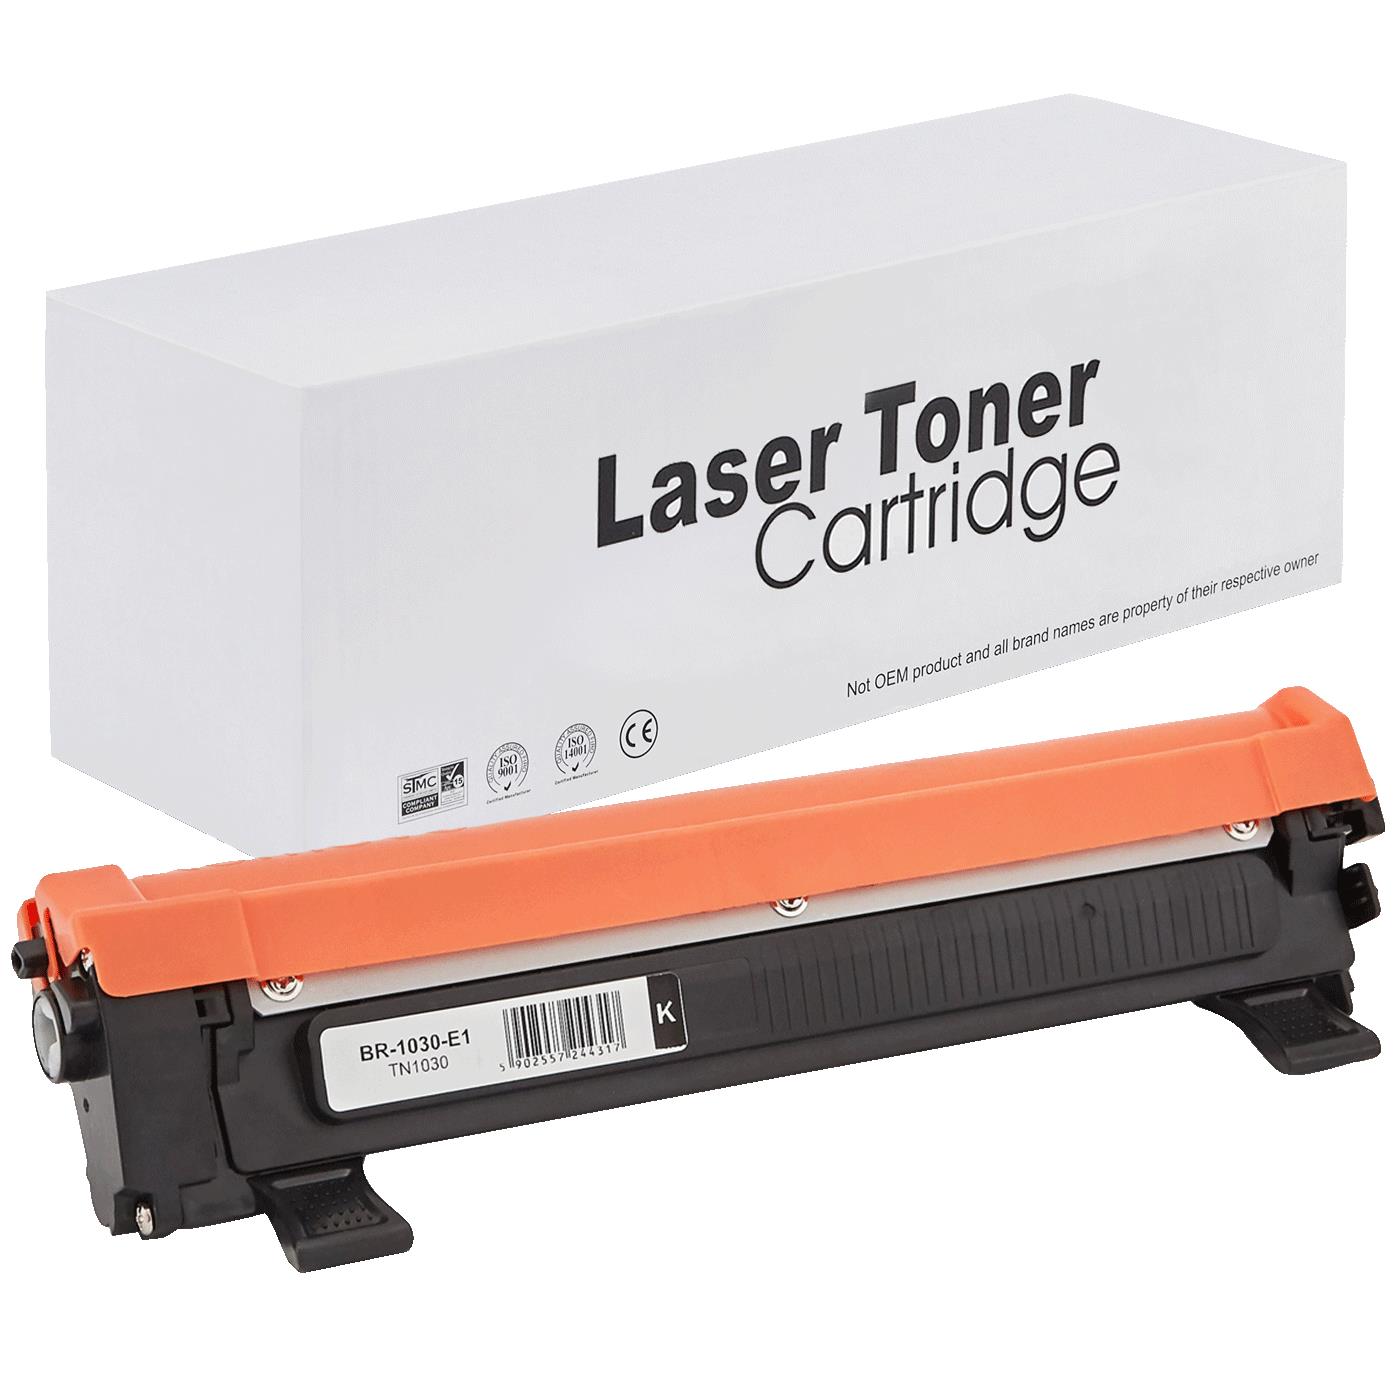 съвместима тонер касета за принтери и печатащи устройства на Brother DCP-1610WE Toner BR-1030 | TN1030 / TN1050 / TN-1030. Ниски цени, прецизно изпълнение, високо качество.